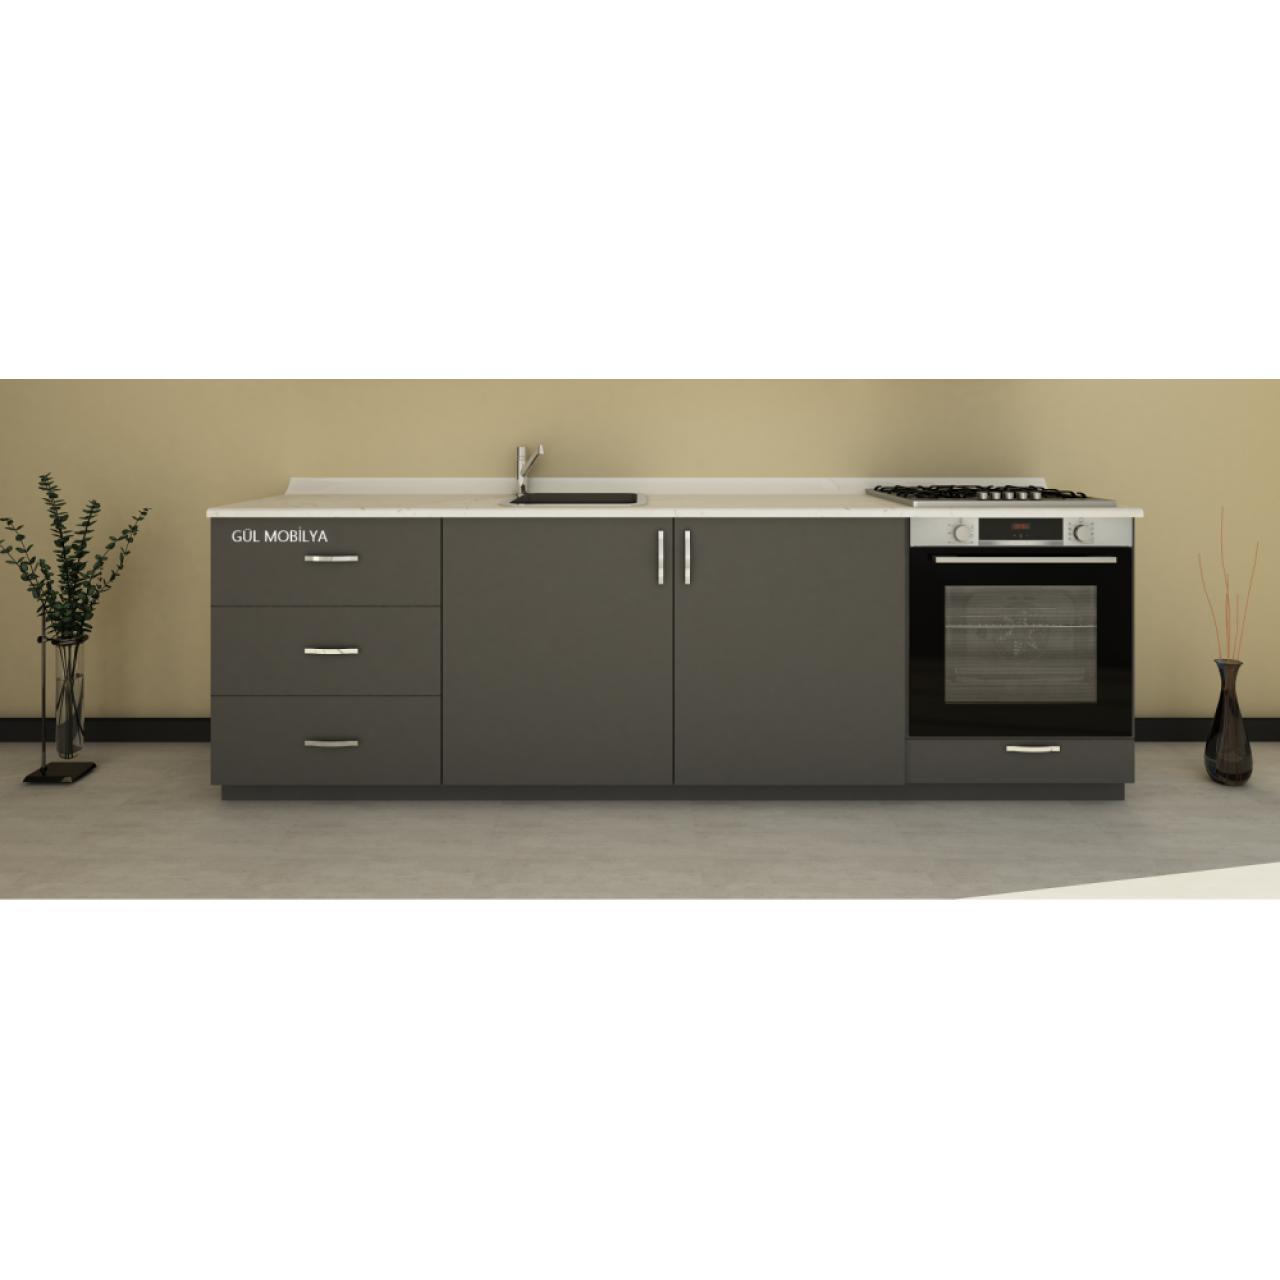 240 cm Mutfak alt dolap MDFLAM  kapaklı Hazır modüler mutfak dolabı